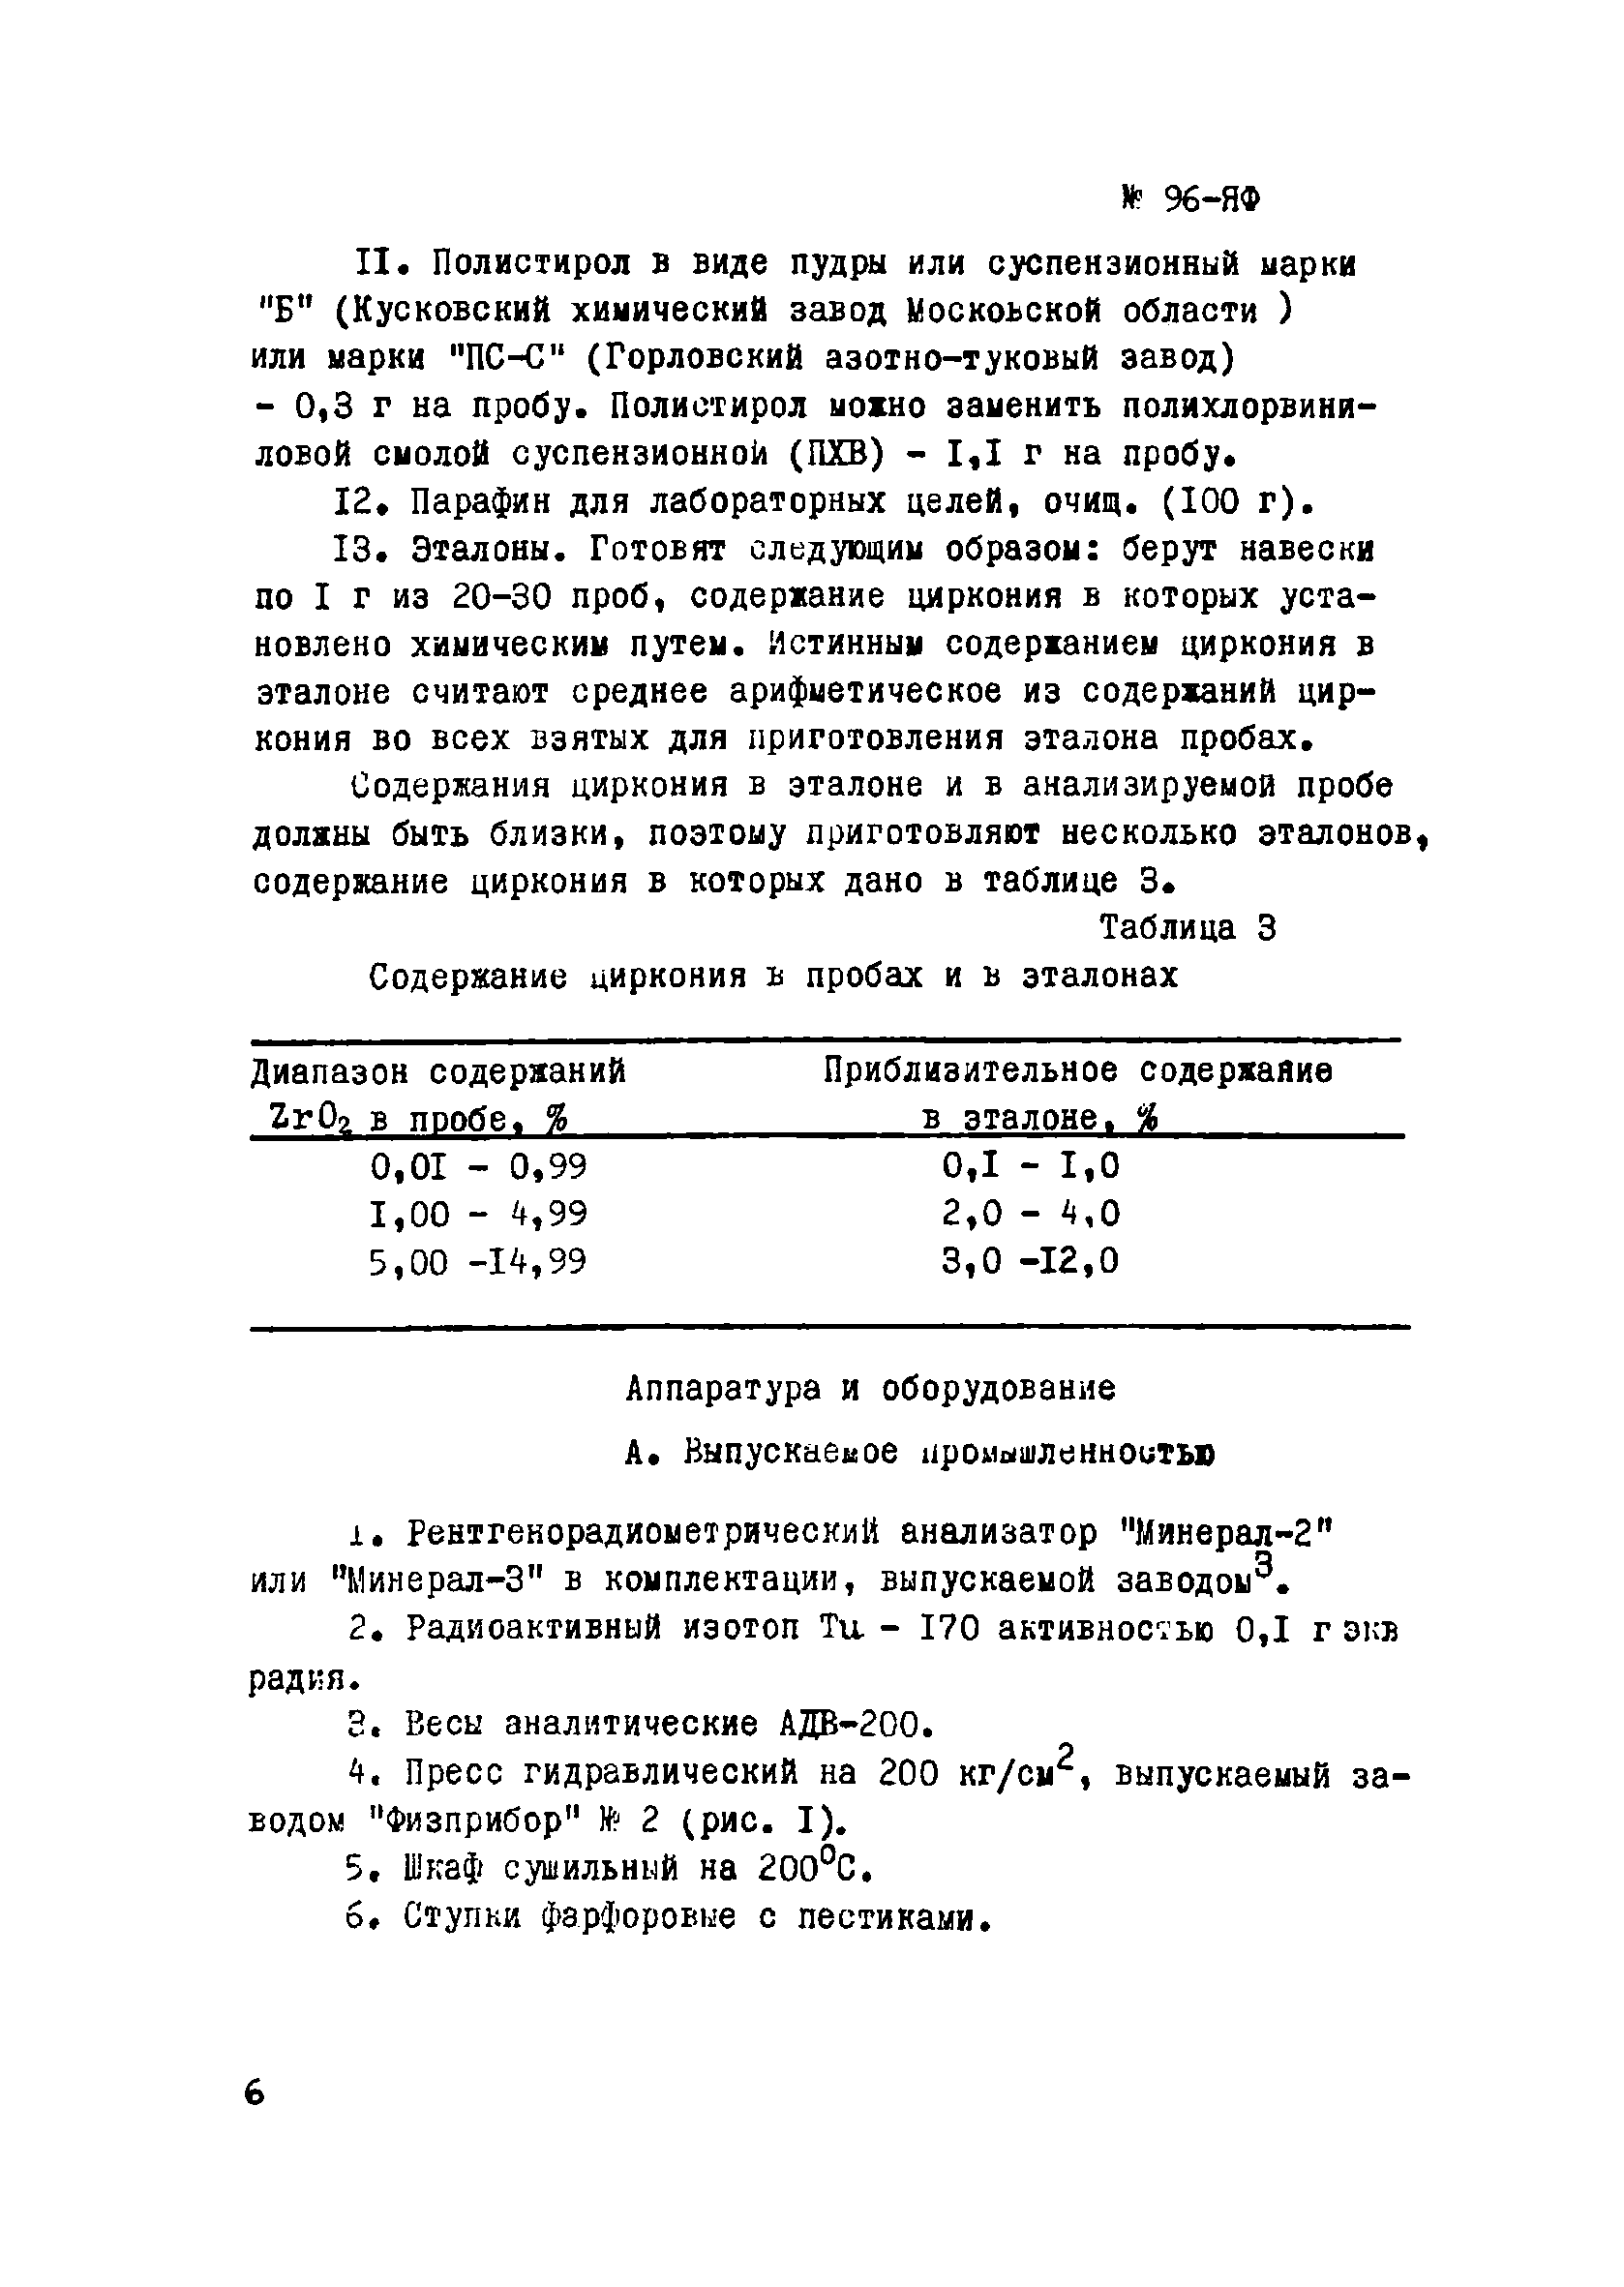 Инструкция НСАМ 96-ЯФ